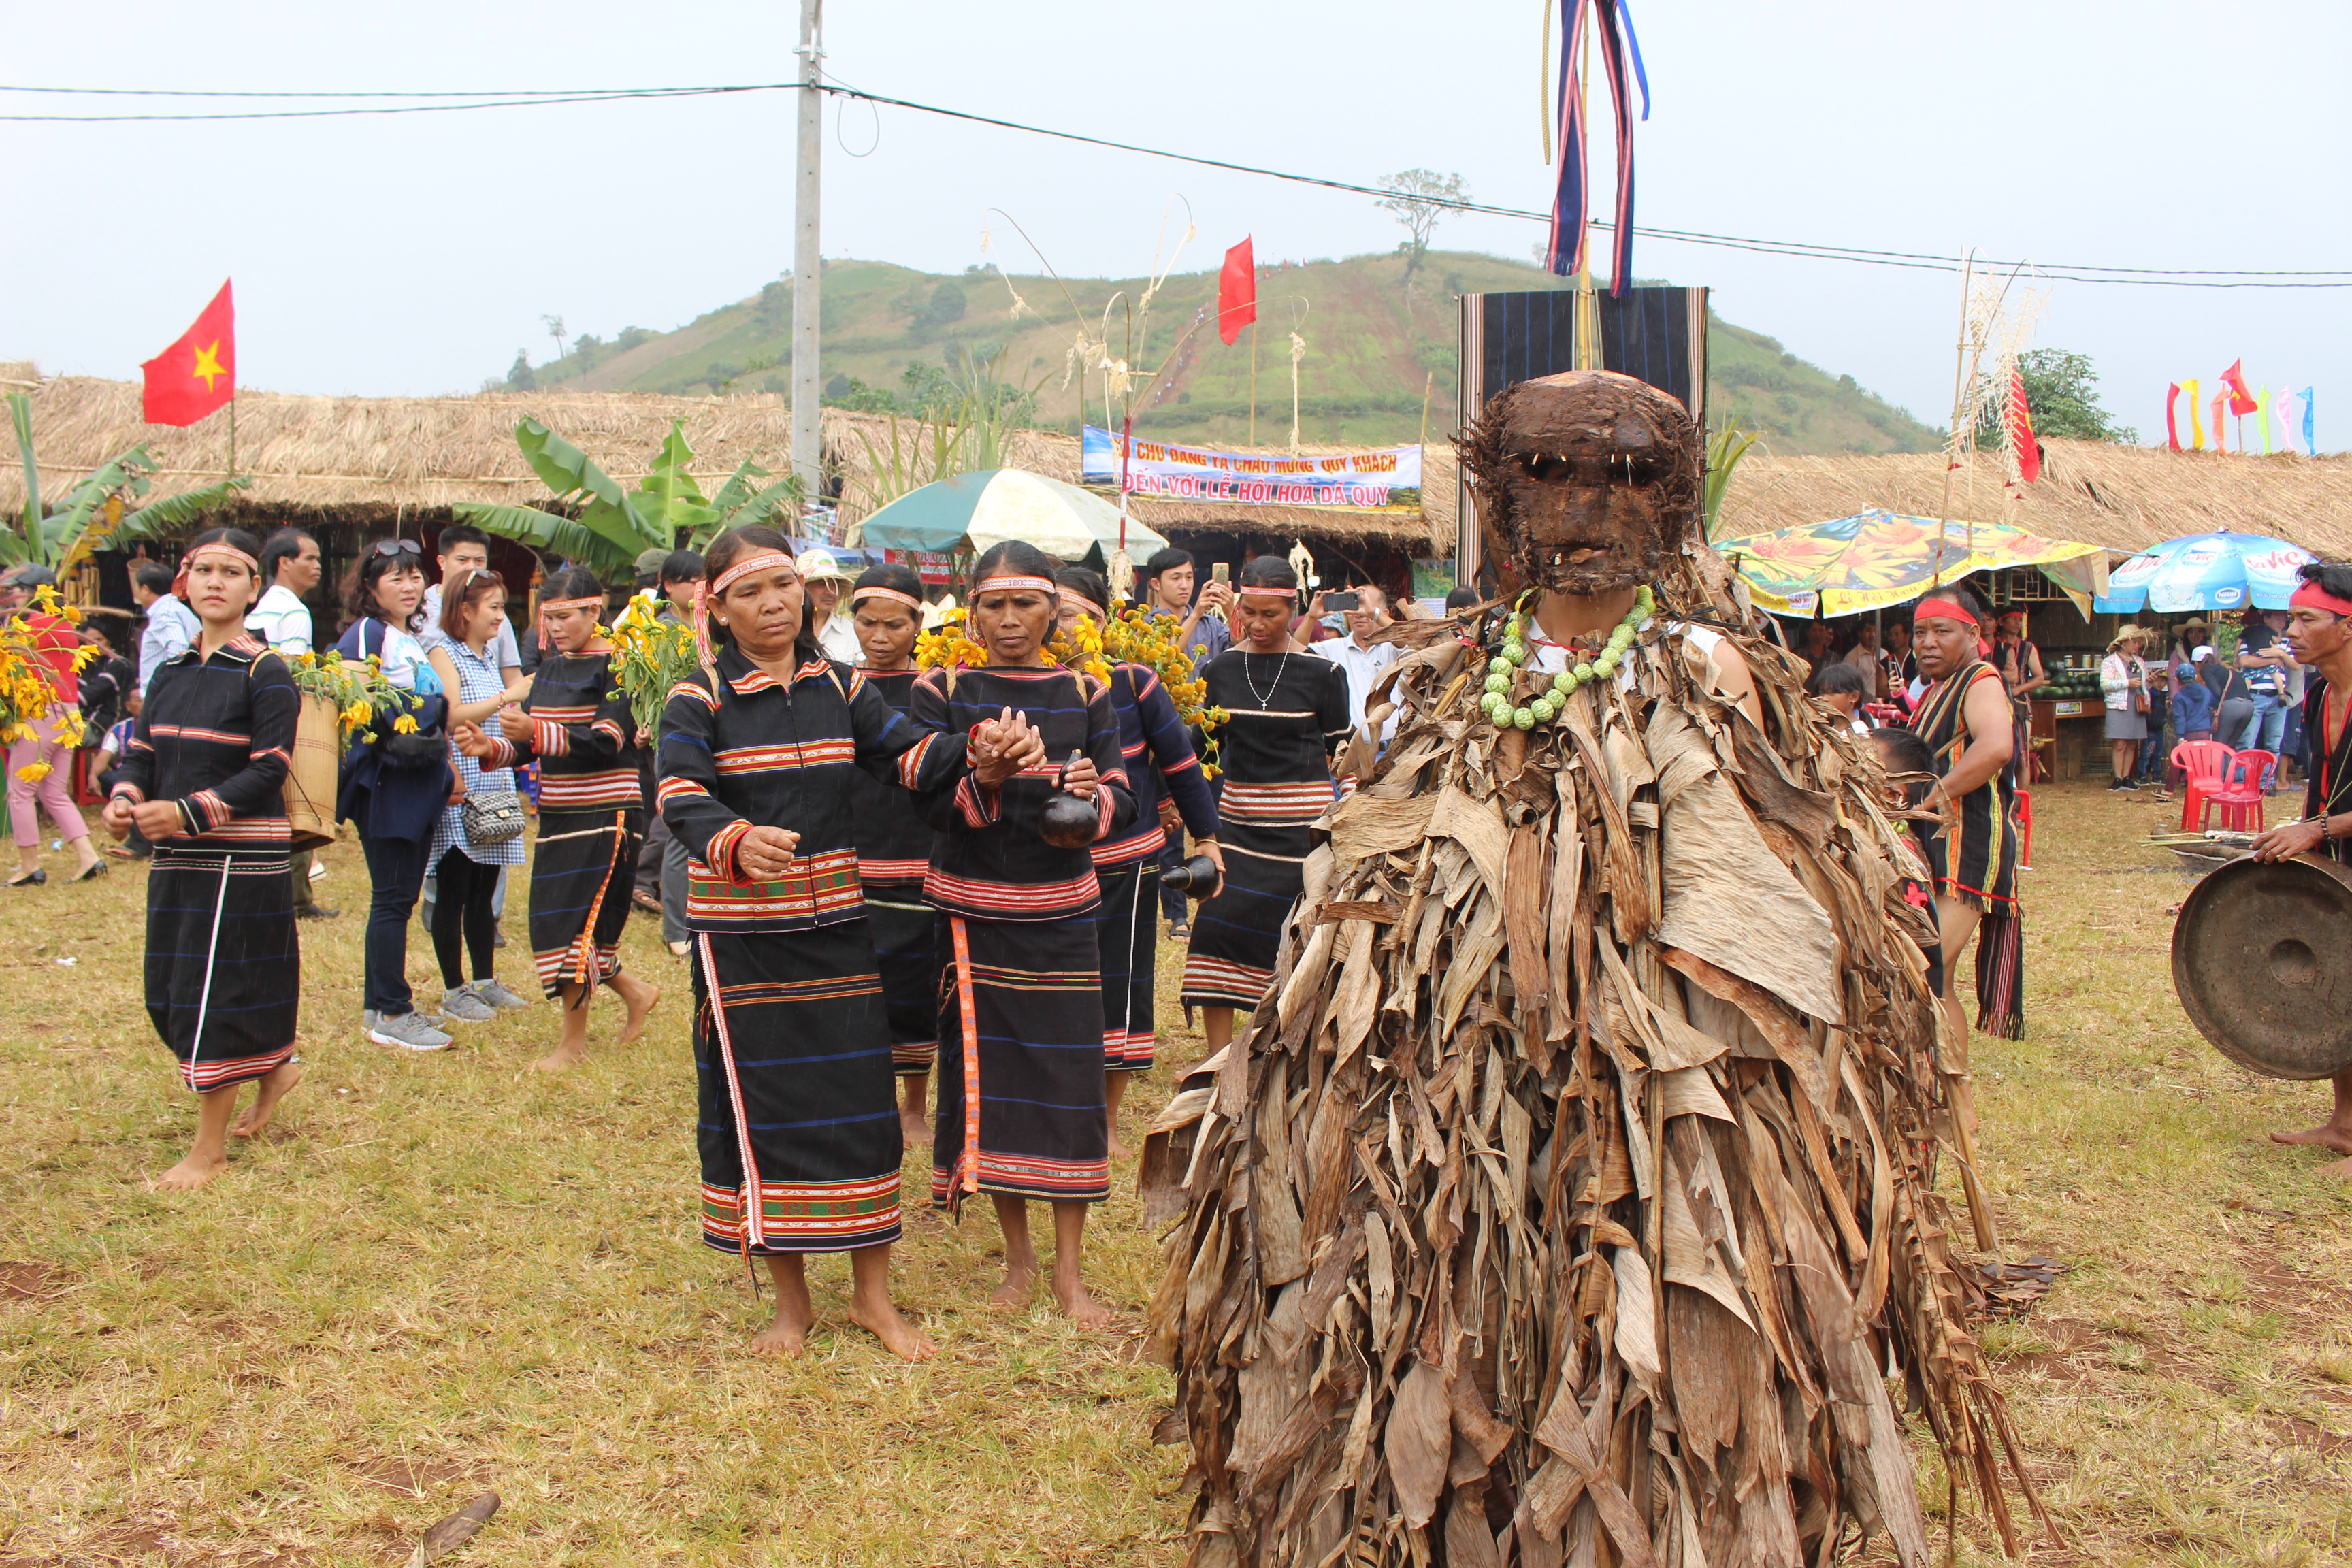 Huyện Chư Păh tổ chức Lễ hội hoa dã quỳ - núi lửa Chư Đang Ya năm 2018 với nhiều hoạt động hấp dẫn